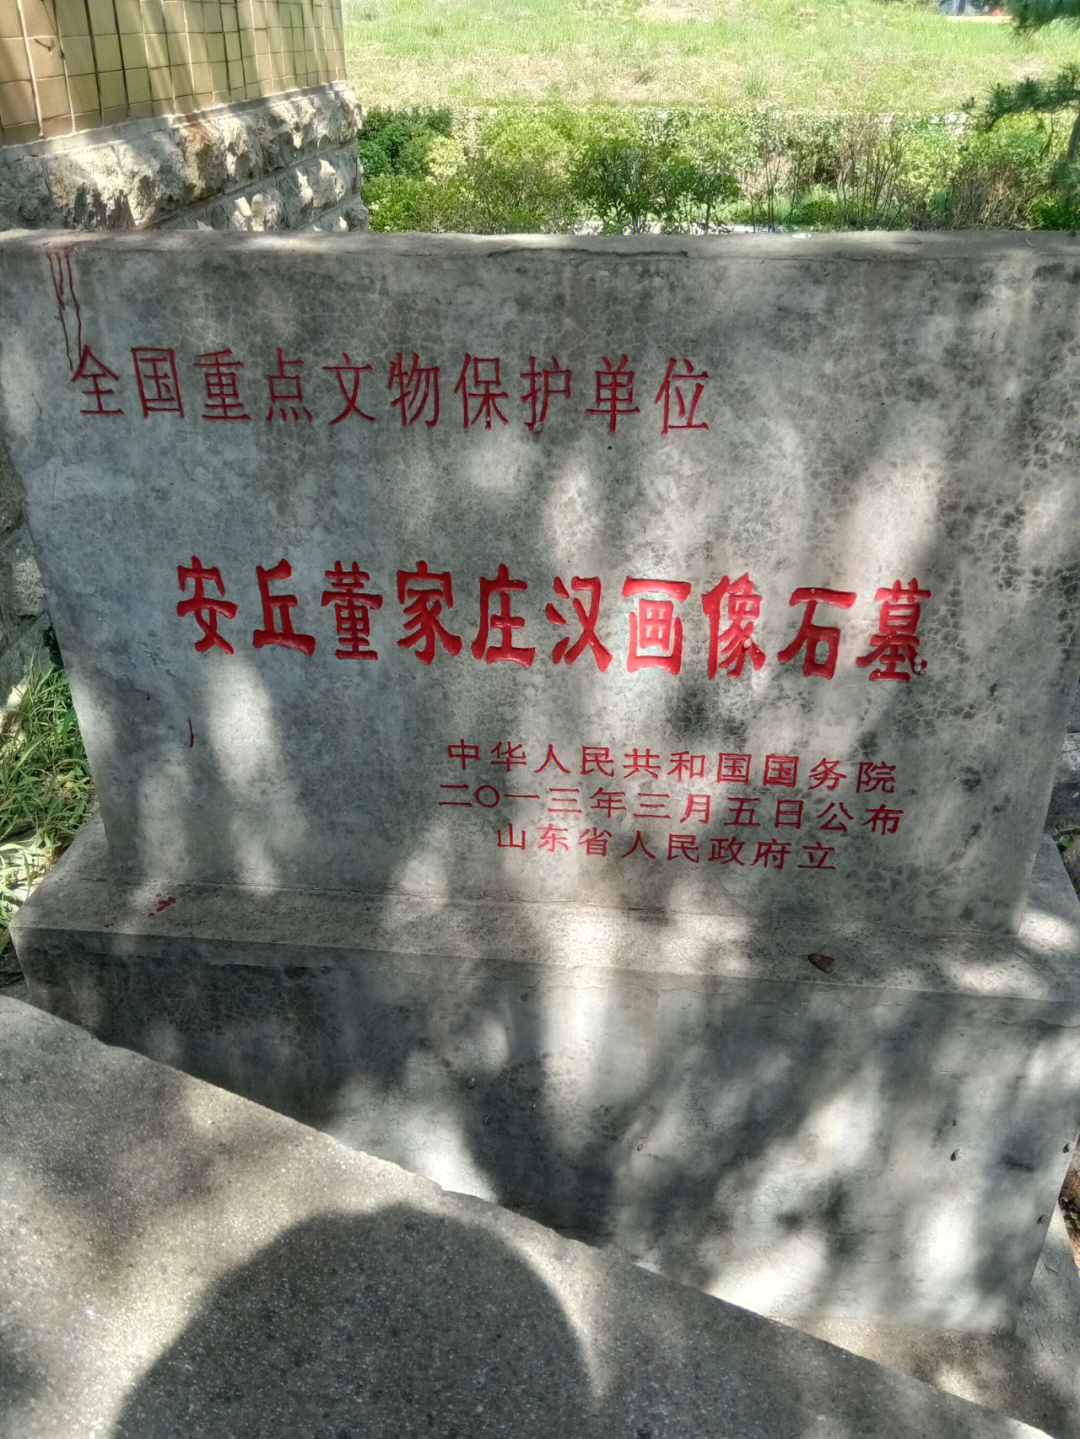 安丘董家庄汉画像石墓原址在凌河镇董家庄村北,1959年因兴修牟山水库